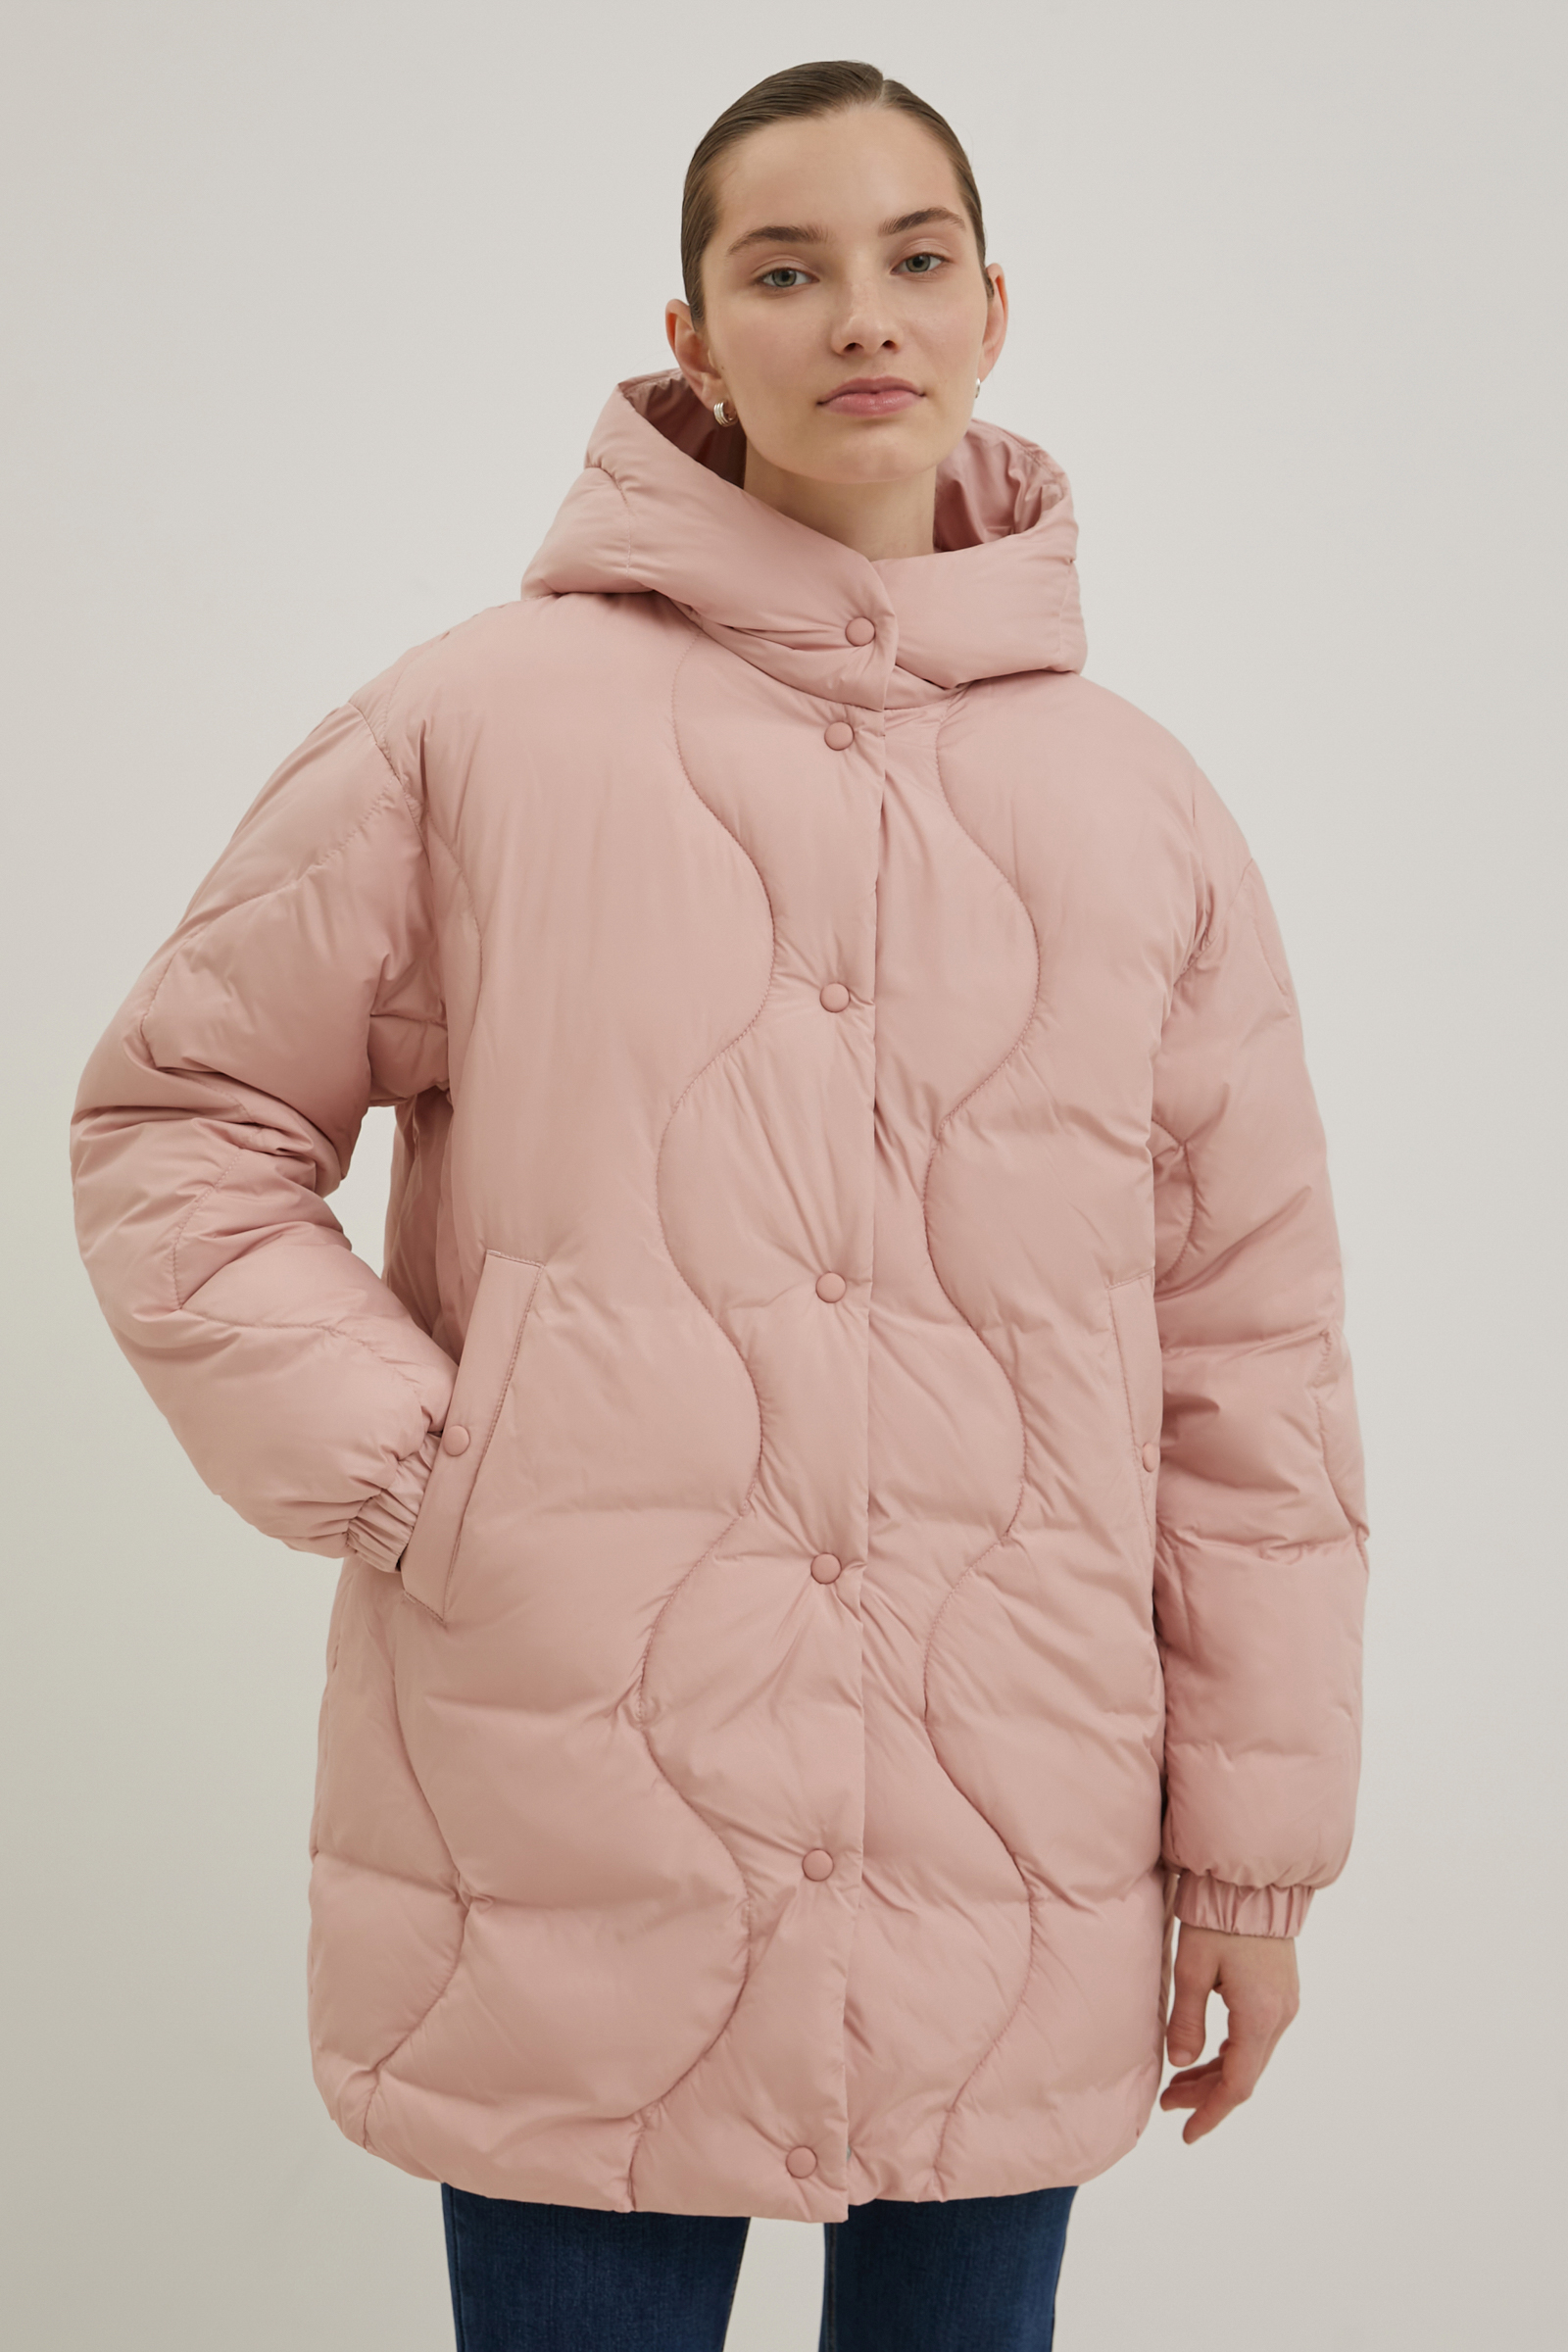 Пальто женское Finn Flare FBE11000 розовое L